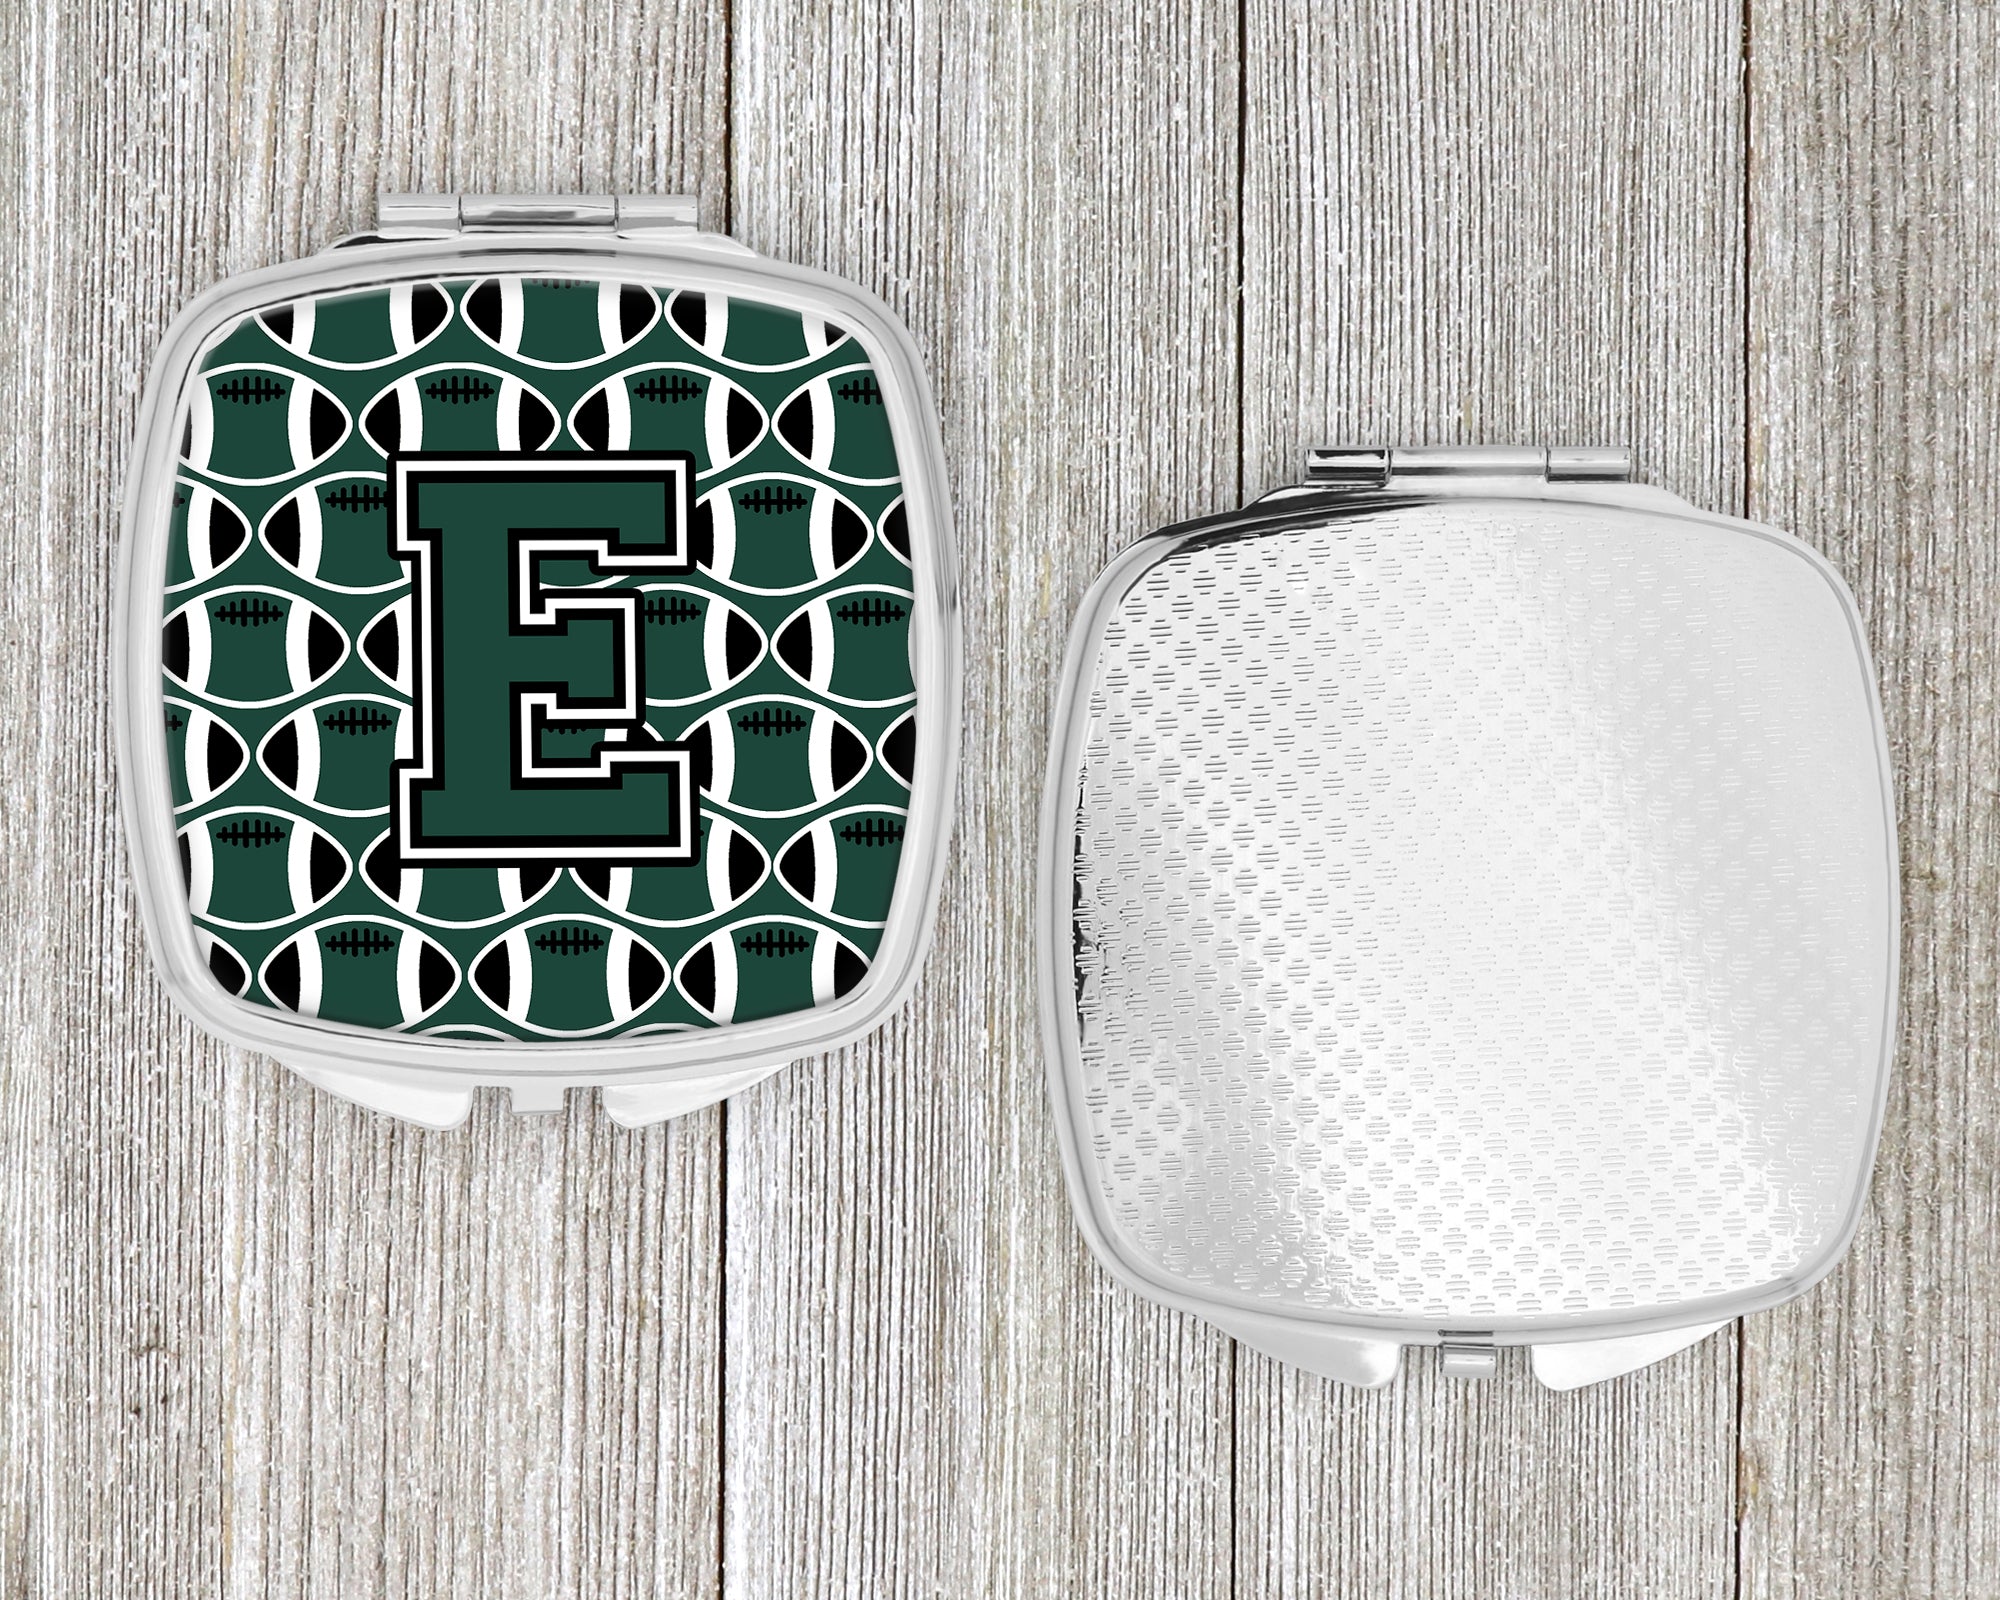 Letter E Football Green and White Compact Mirror CJ1071-ESCM